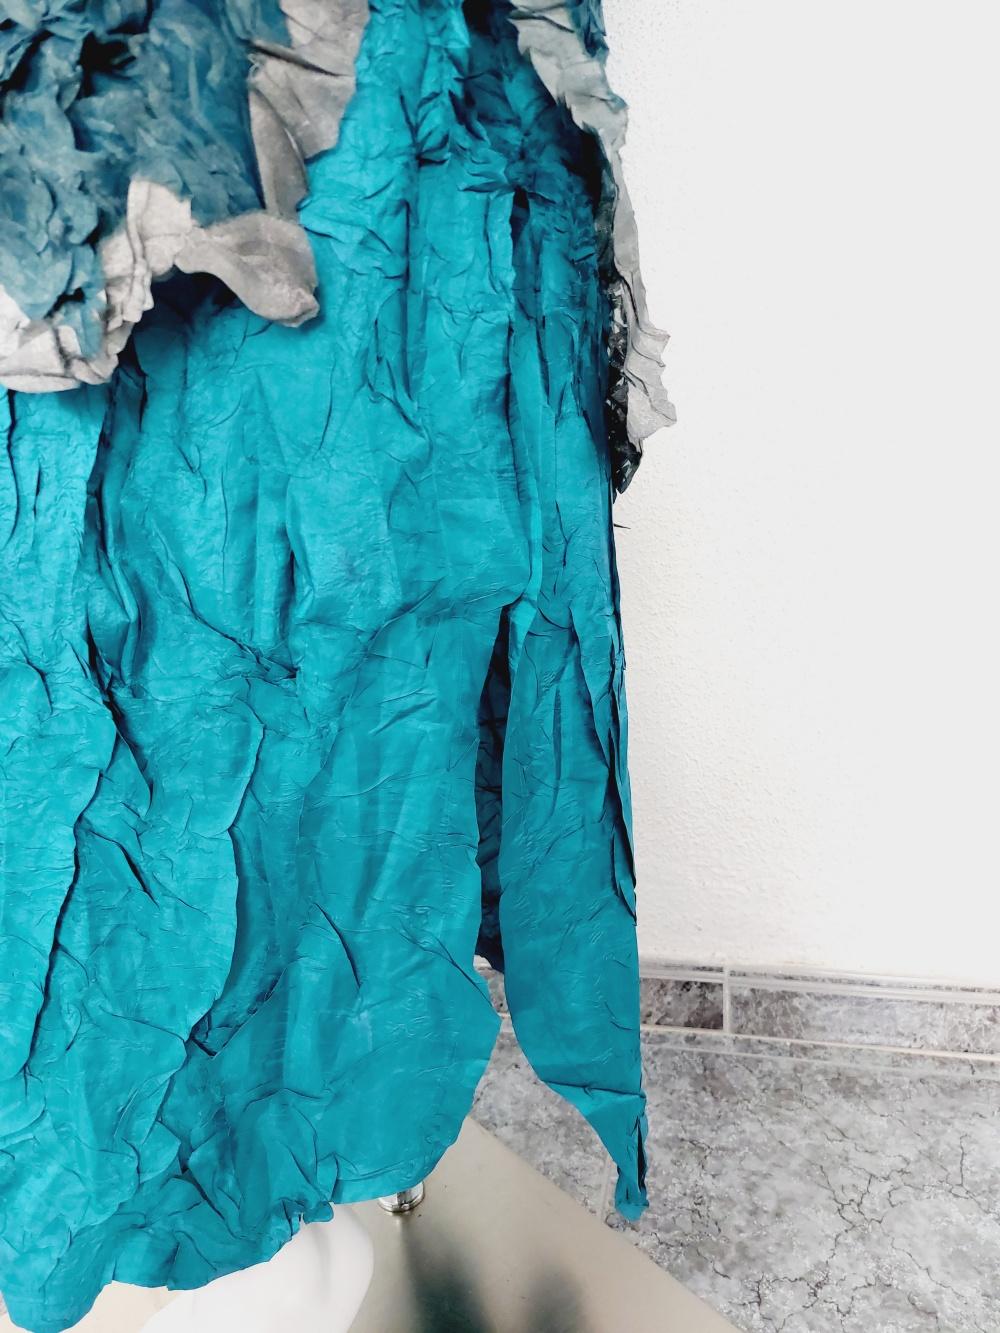 Issey Miyake Metallic Blue Wrinkled Runway Japanese Pleats Please Dress Gown 7